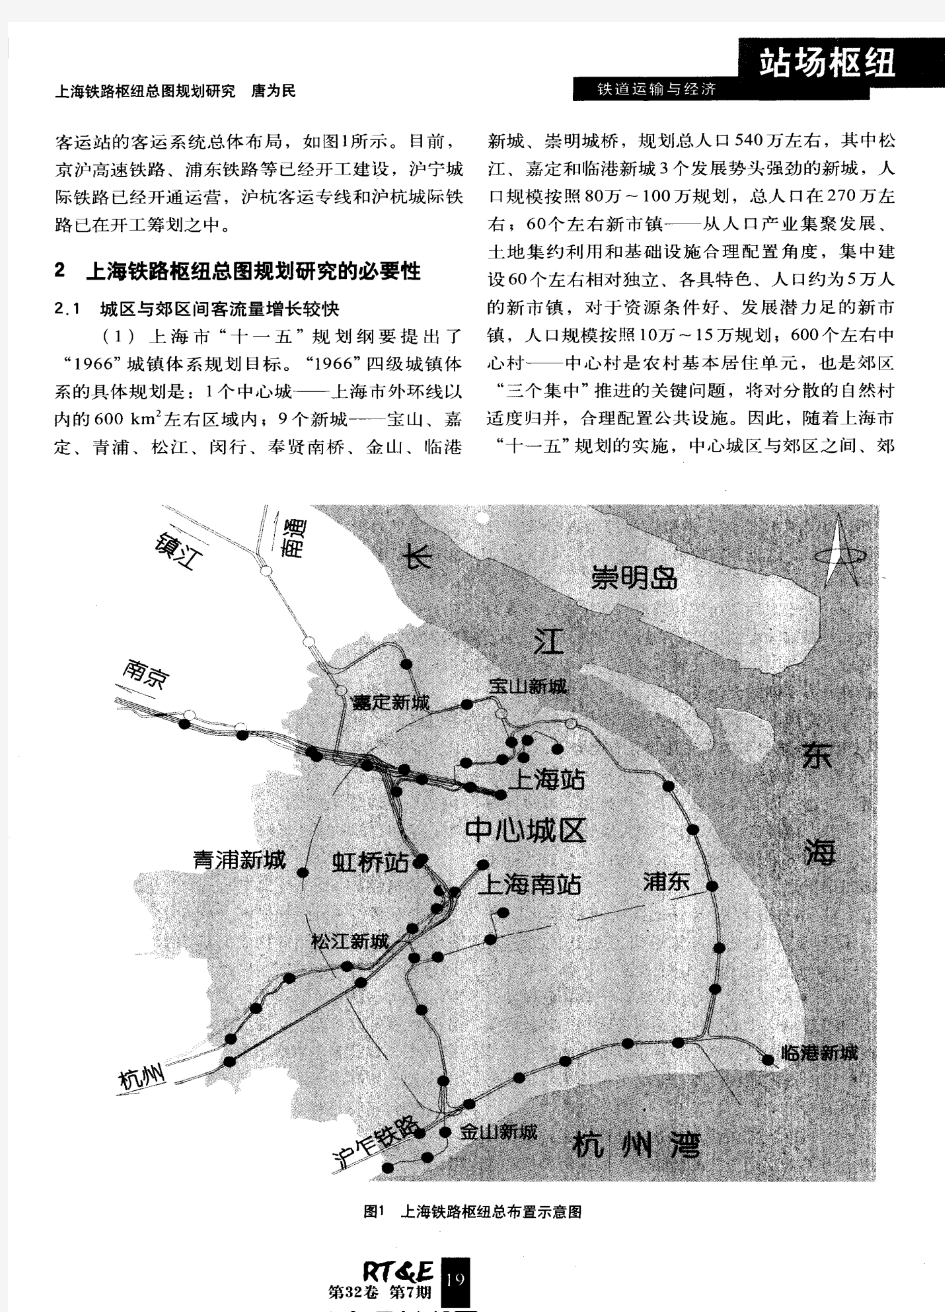 上海铁路枢纽总图规划研究